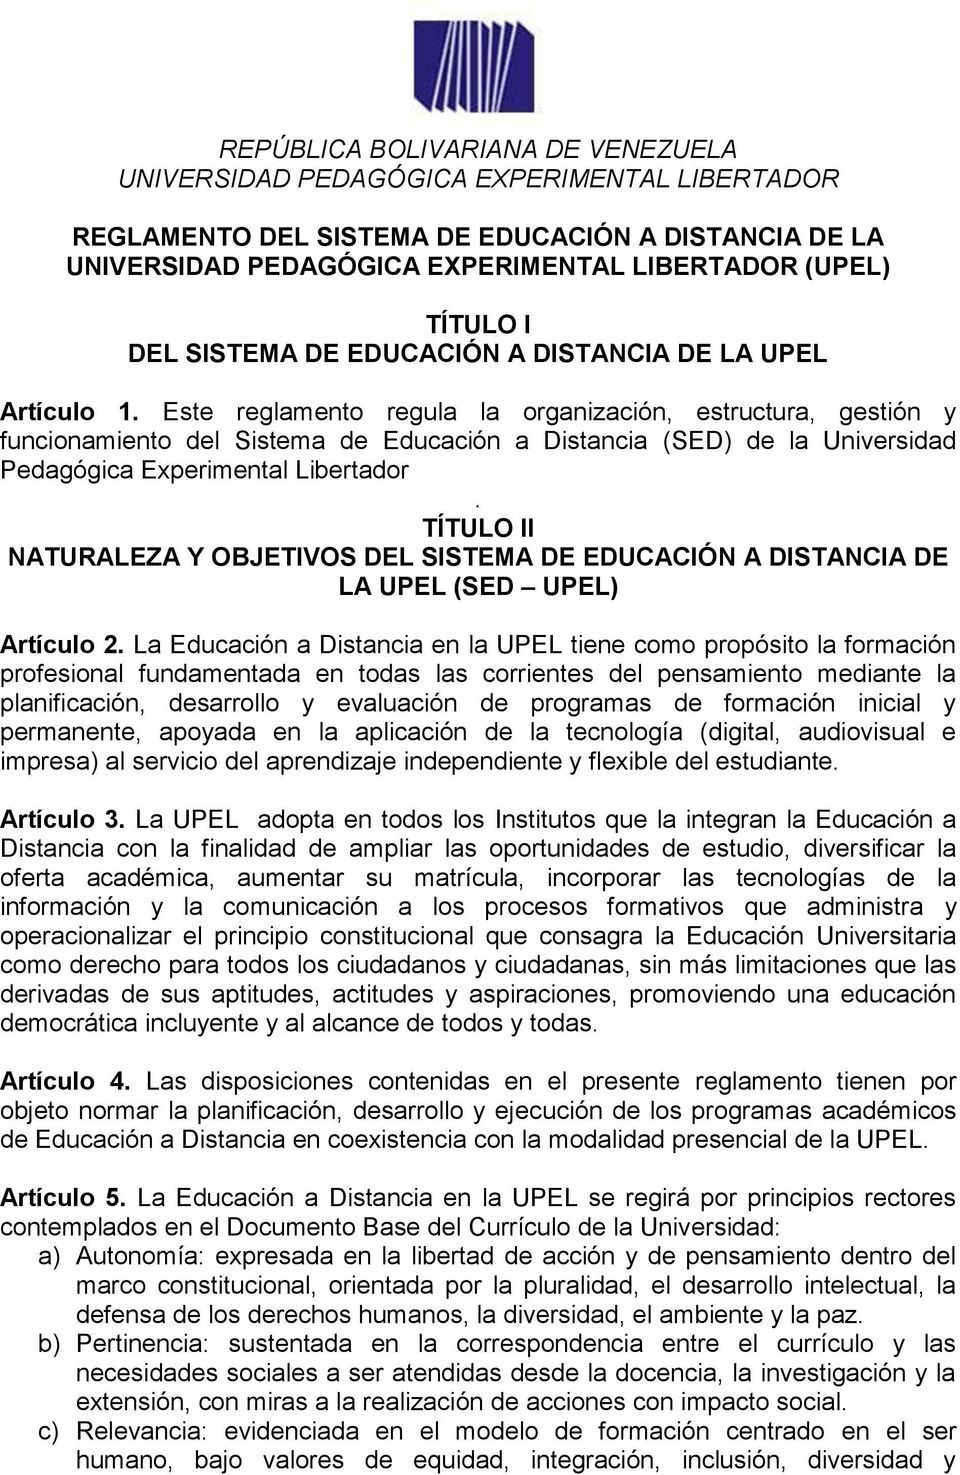 Este reglamento regula la organización, estructura, gestión y funcionamiento del Sistema de Educación a Distancia (SED) de la Universidad Pedagógica Experimental Libertador.